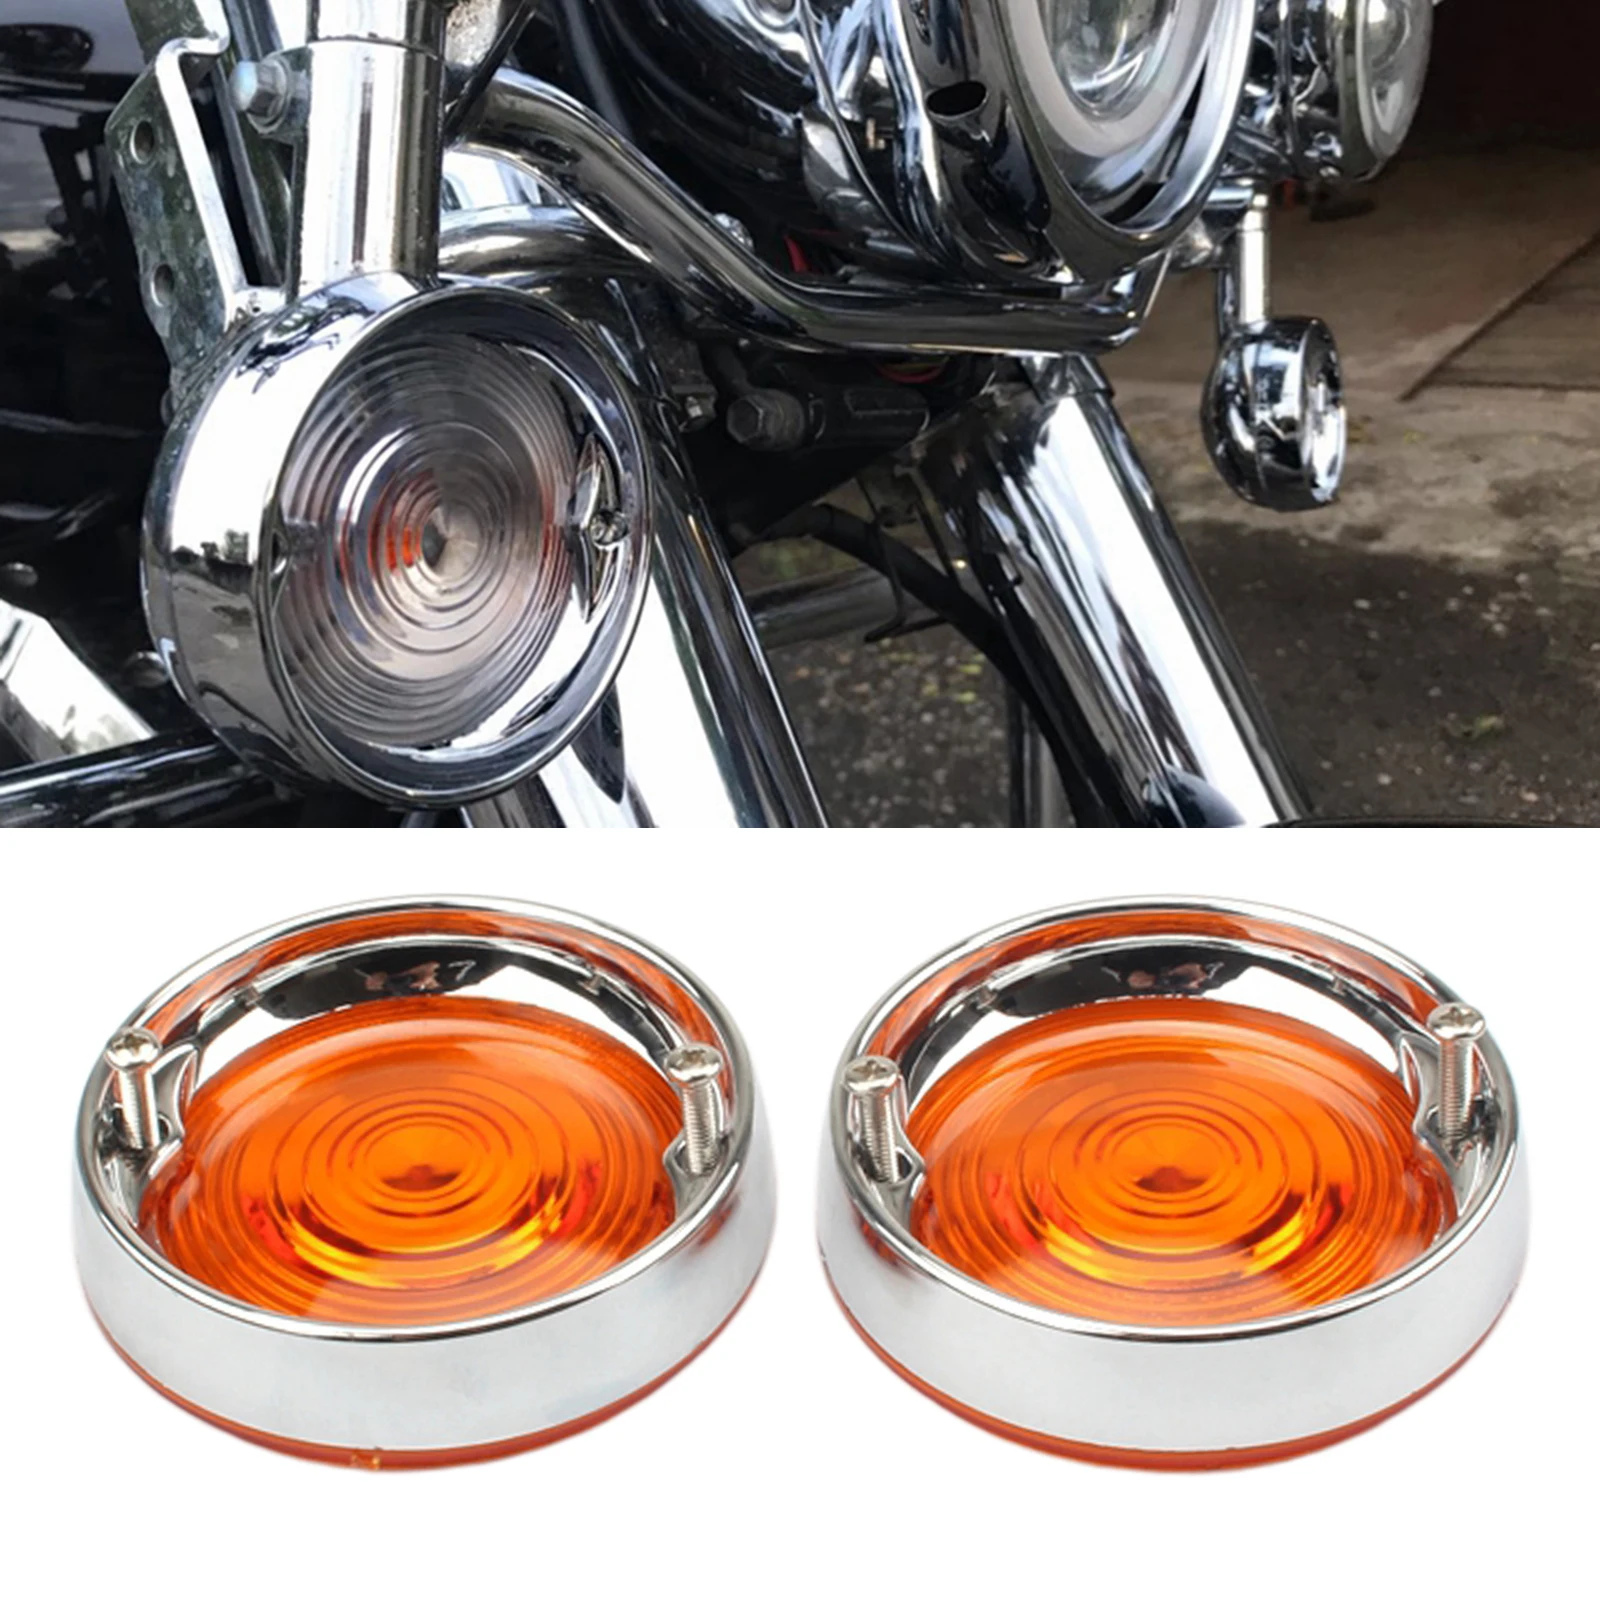 2Pcs Motorcycle Turn Signal Light Bezels Lens Cover Visor Trim Rings For Harley Touring